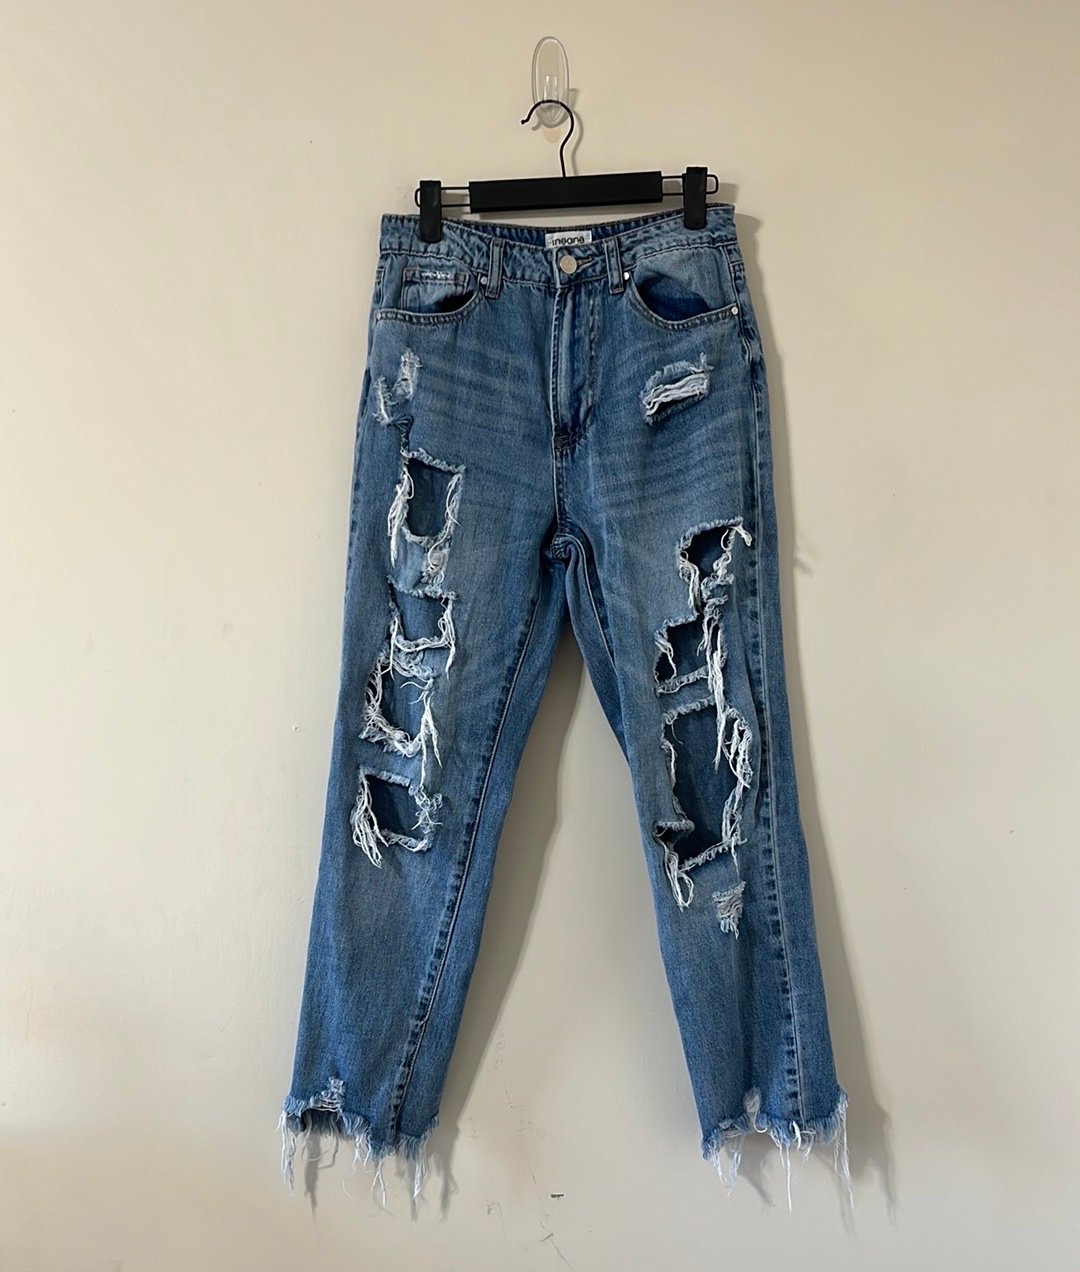 floor price Insane Gene Light Wash Super Distressed High Rise Girlfriend Denim Jeans Size 25 n8hcU5HvZ online store